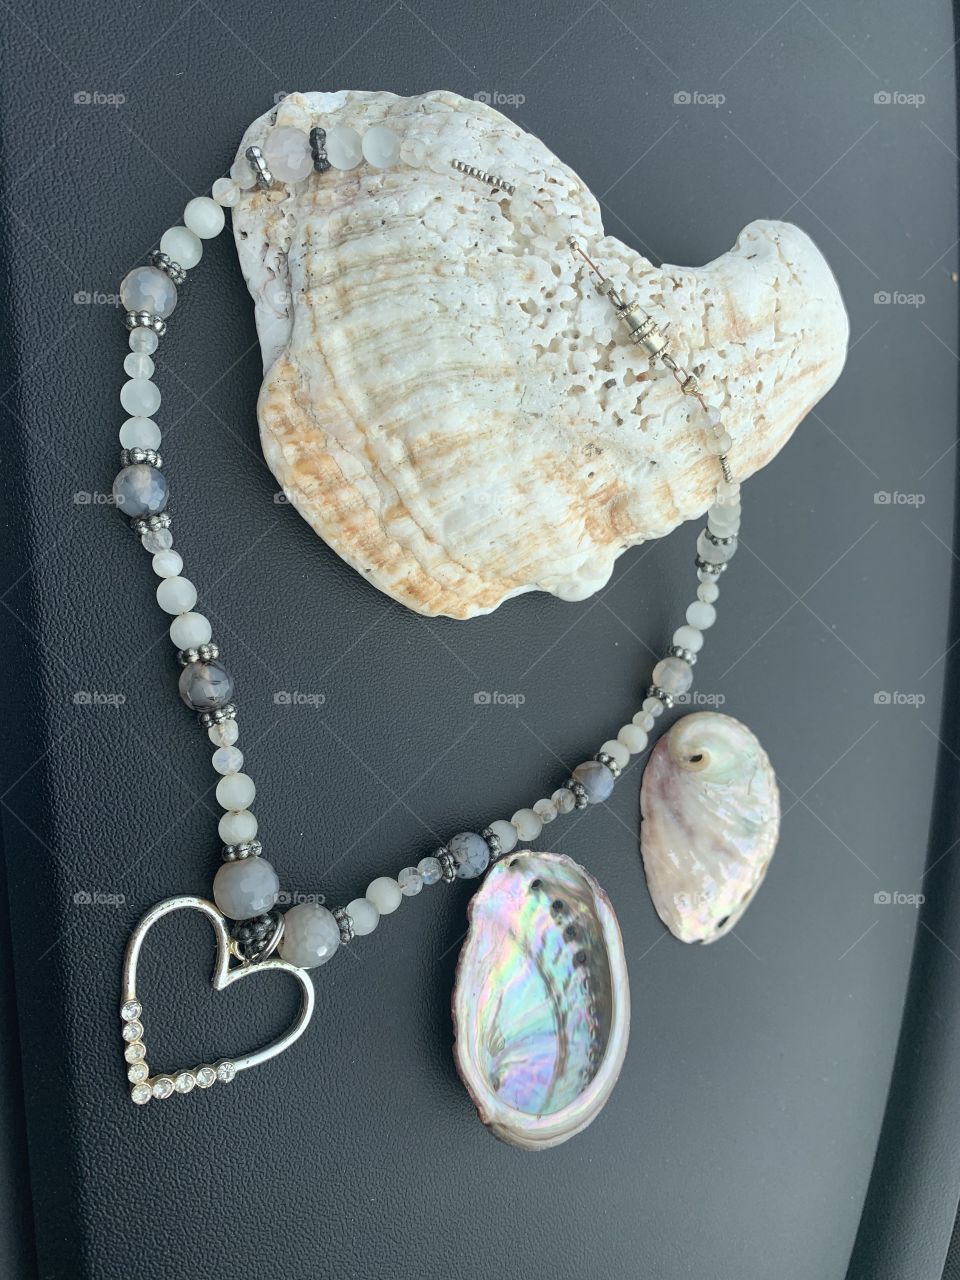 Heart pendant precious stone beaded jewelry and seashells